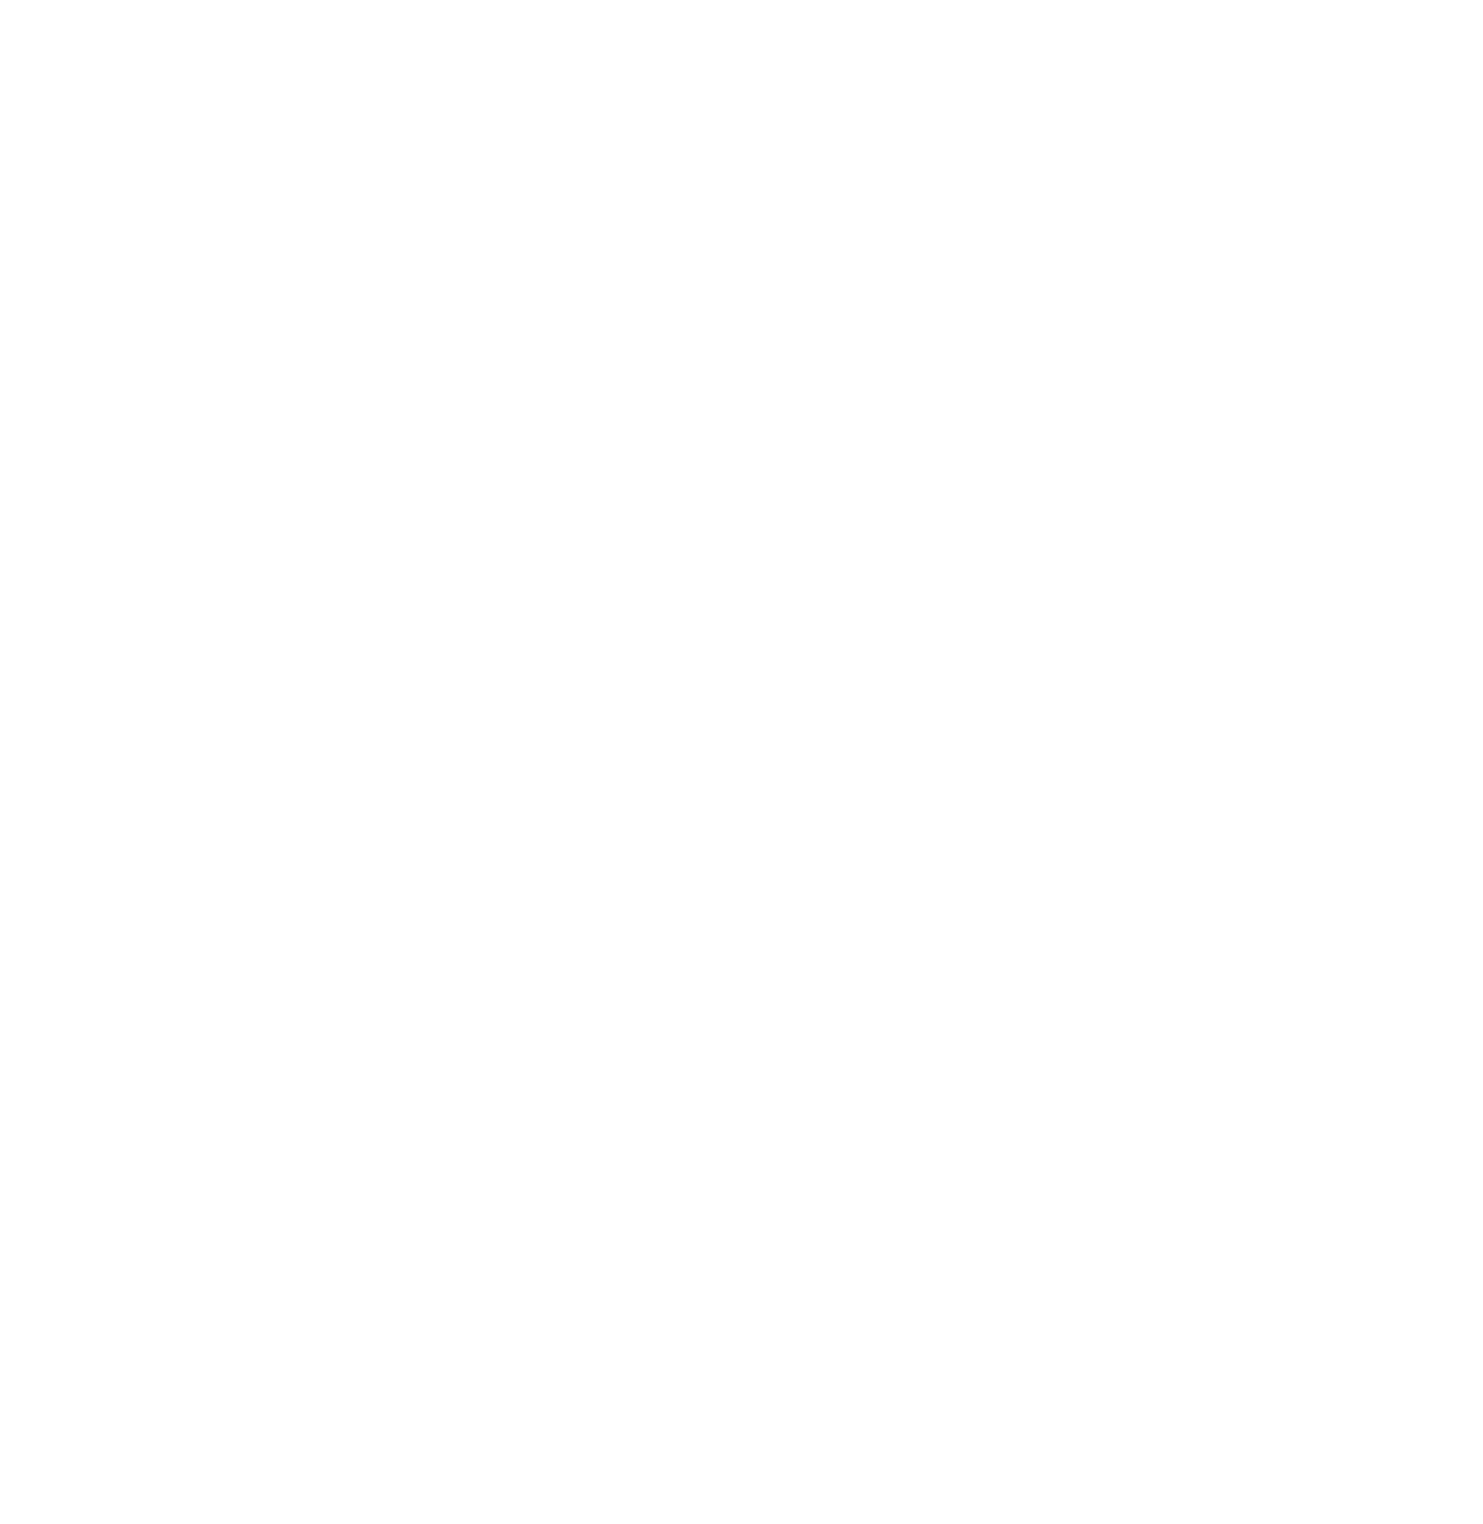 NextDecade Corp logo for dark backgrounds (transparent PNG)